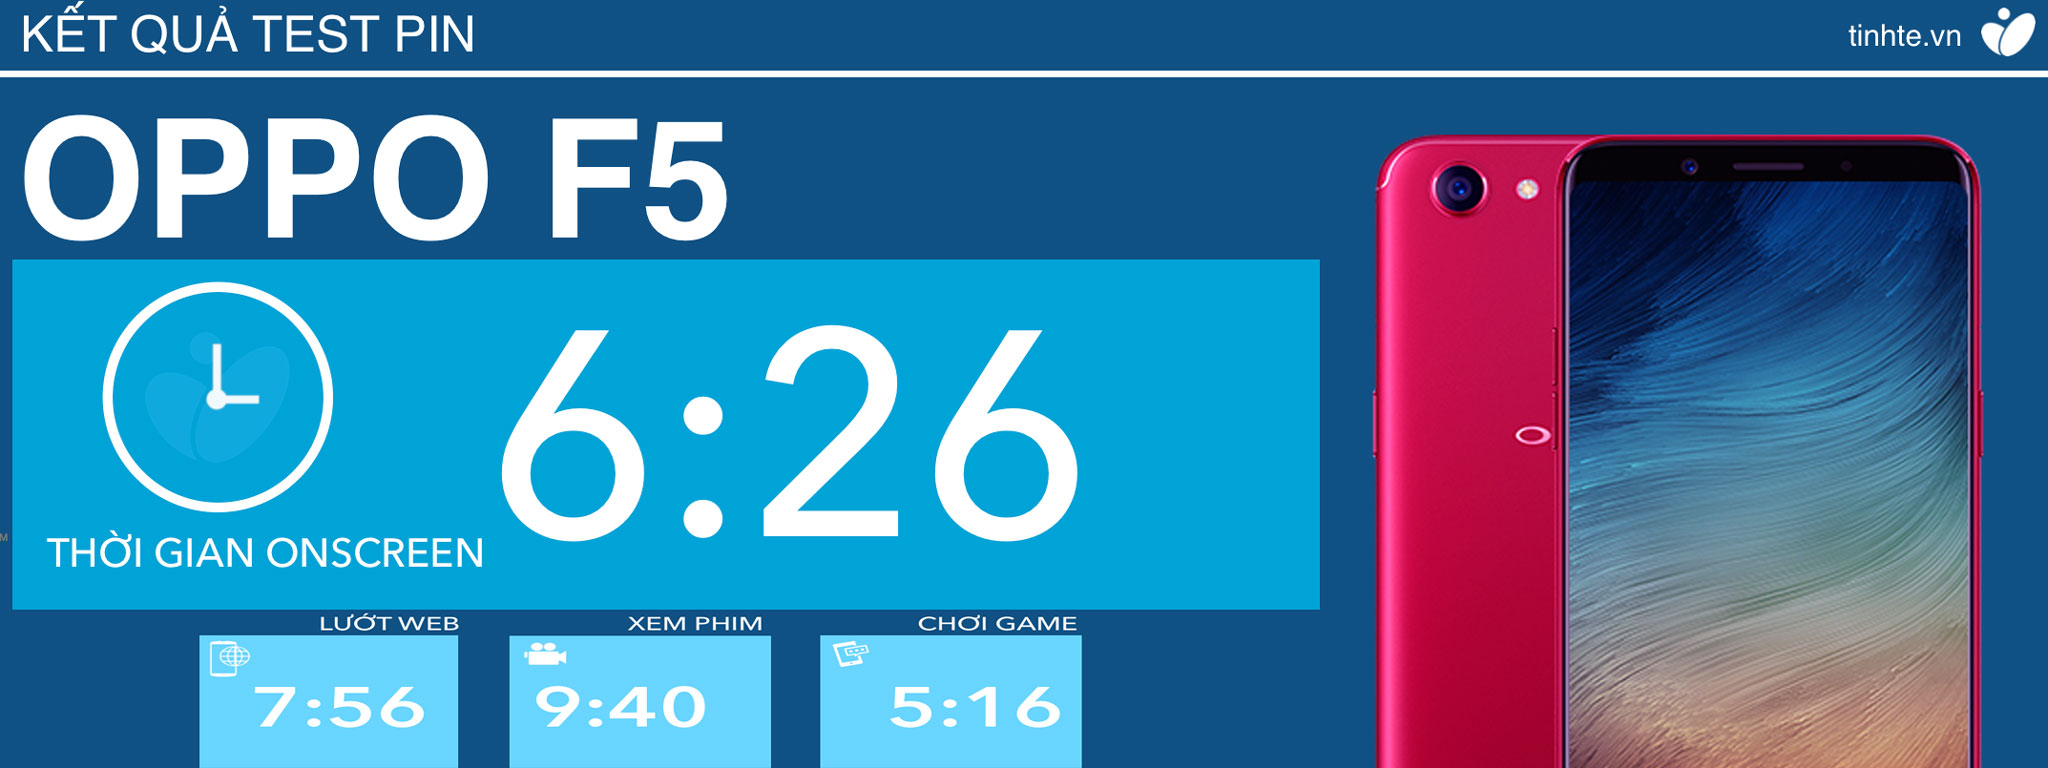 Chi tiết thời lượng pin Oppo F5: on screen liên tục 6 tiếng rưỡi, chơi game được hơn 5 tiếng